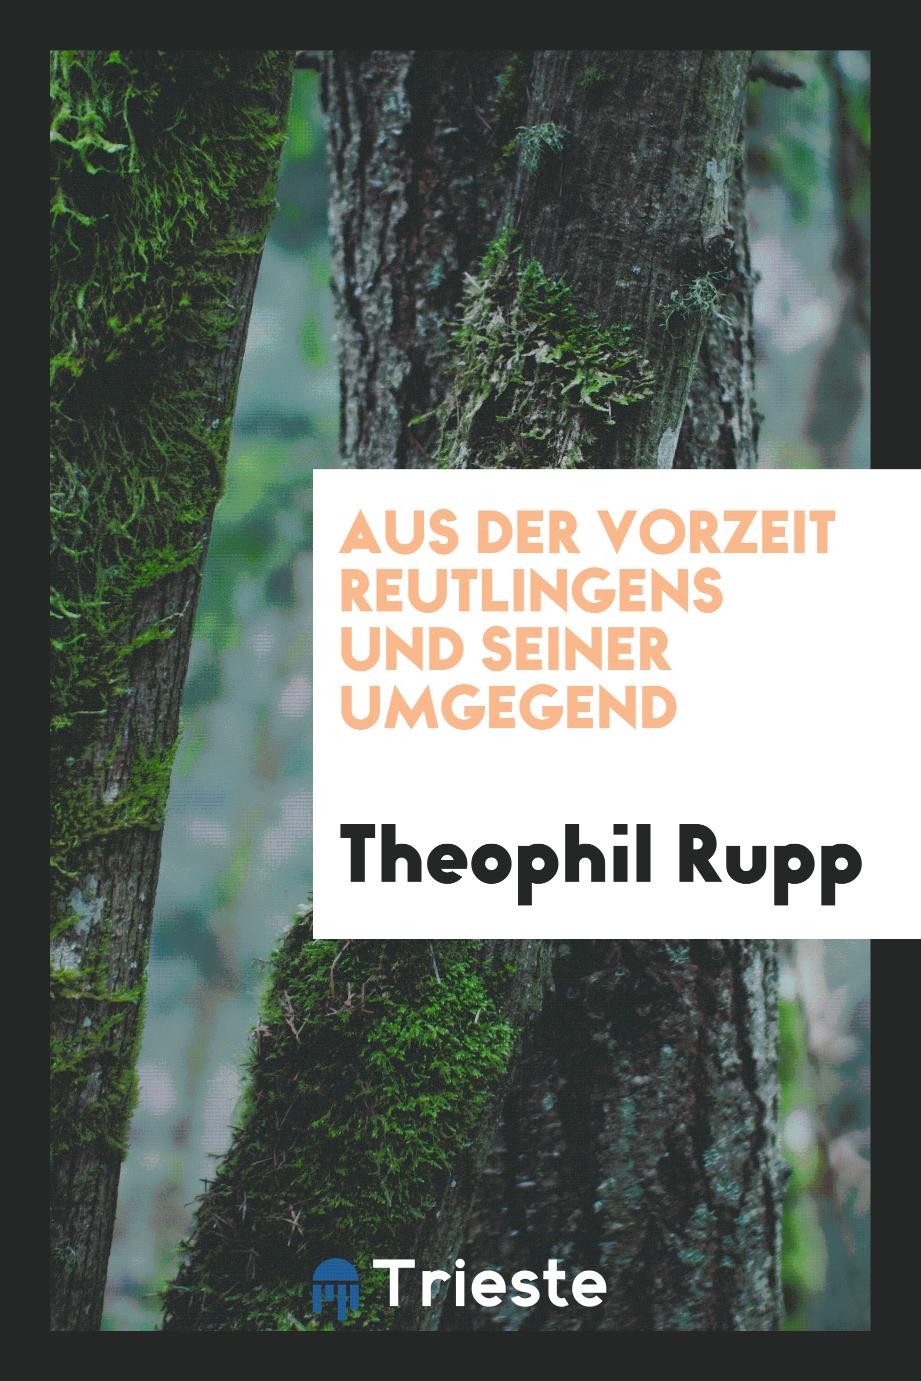 Theophil Rupp - Aus der Vorzeit Reutlingens und Seiner Umgegend